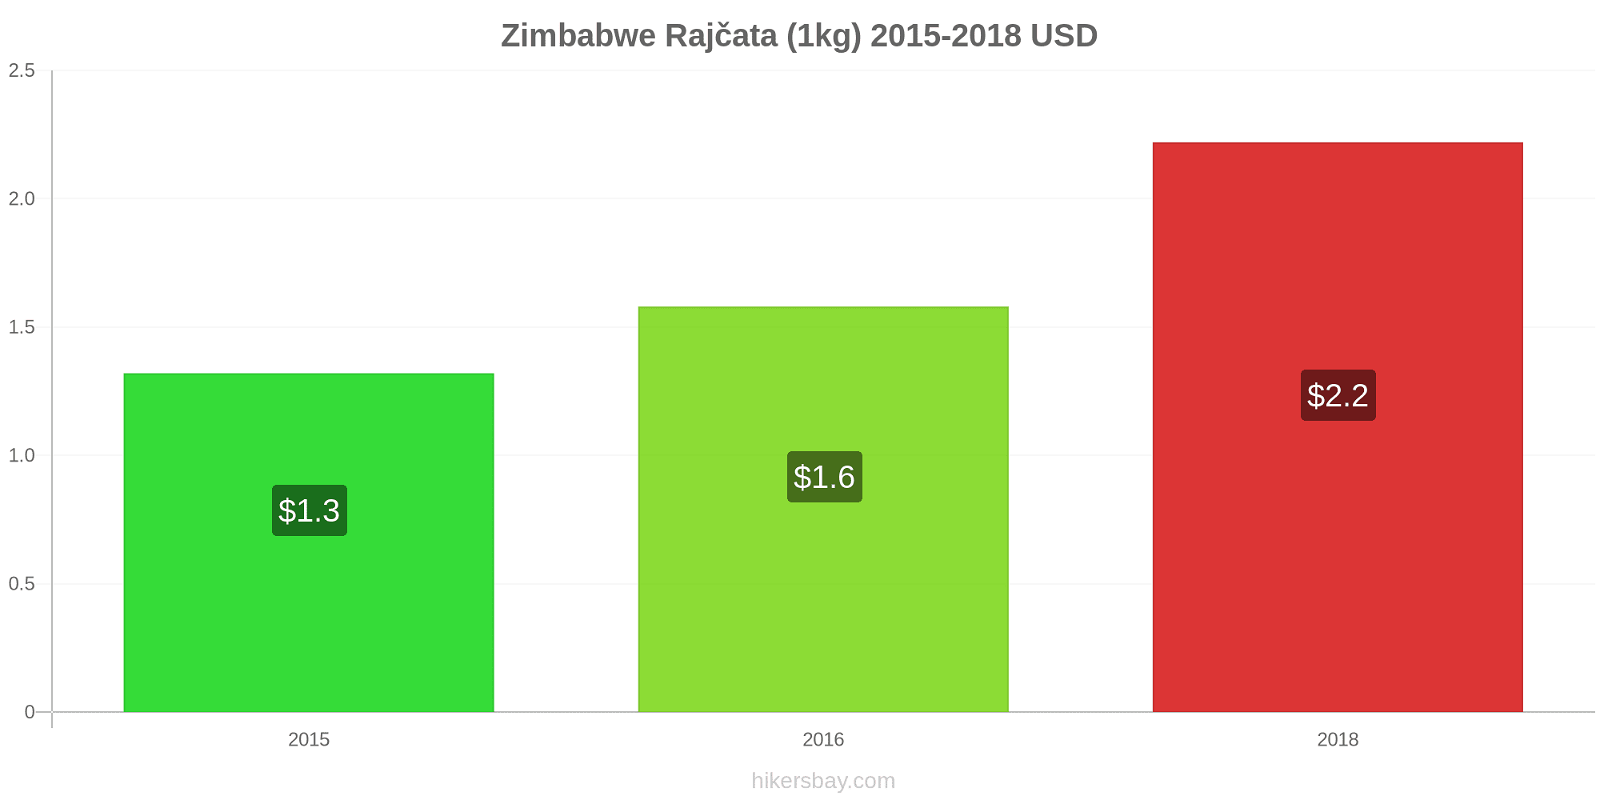 Zimbabwe změny cen Rajčata (1kg) hikersbay.com